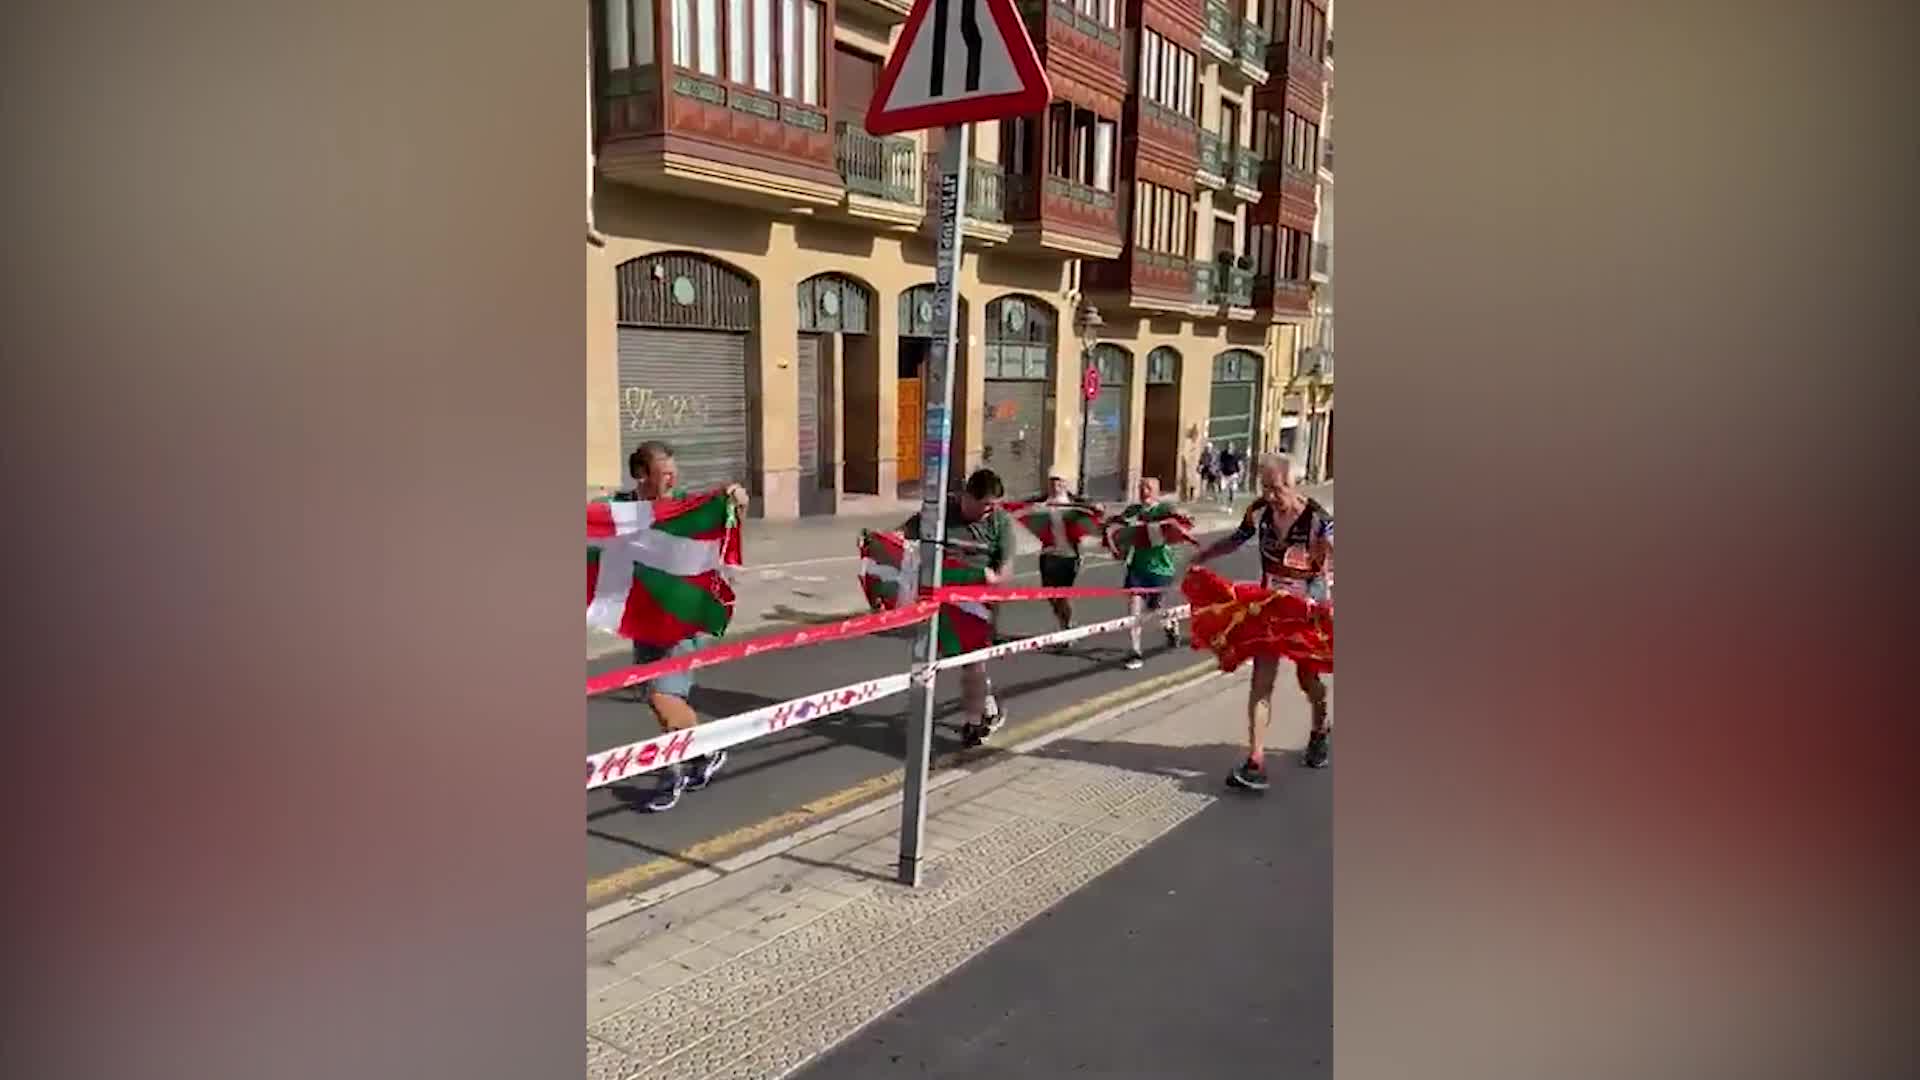 Euskal Herriko koloreak janzteko eskubidea aldarri